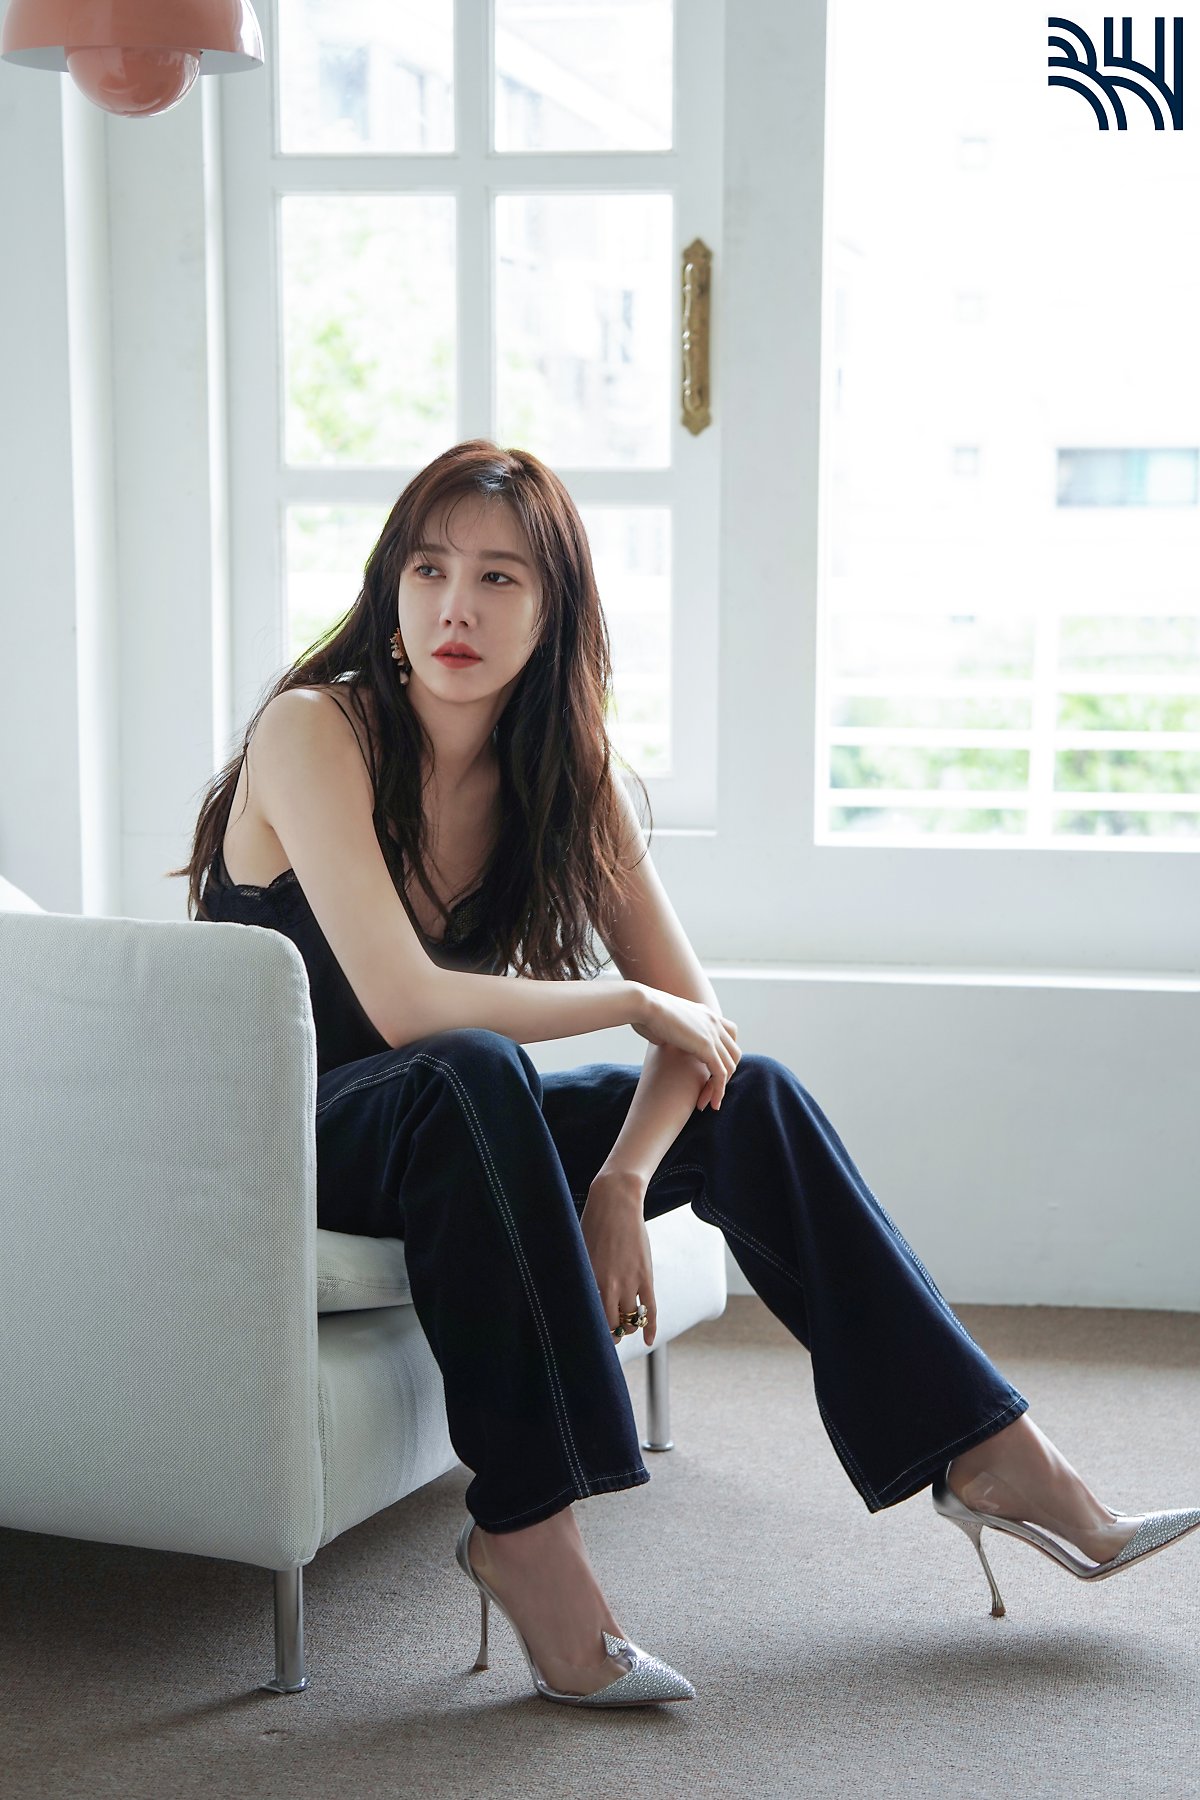 Dù chỉ là những bức ảnh hậu trường nhưng nhan sắc và thần thái của Lee Ji Ah được đánh giá là rất cuốn hút